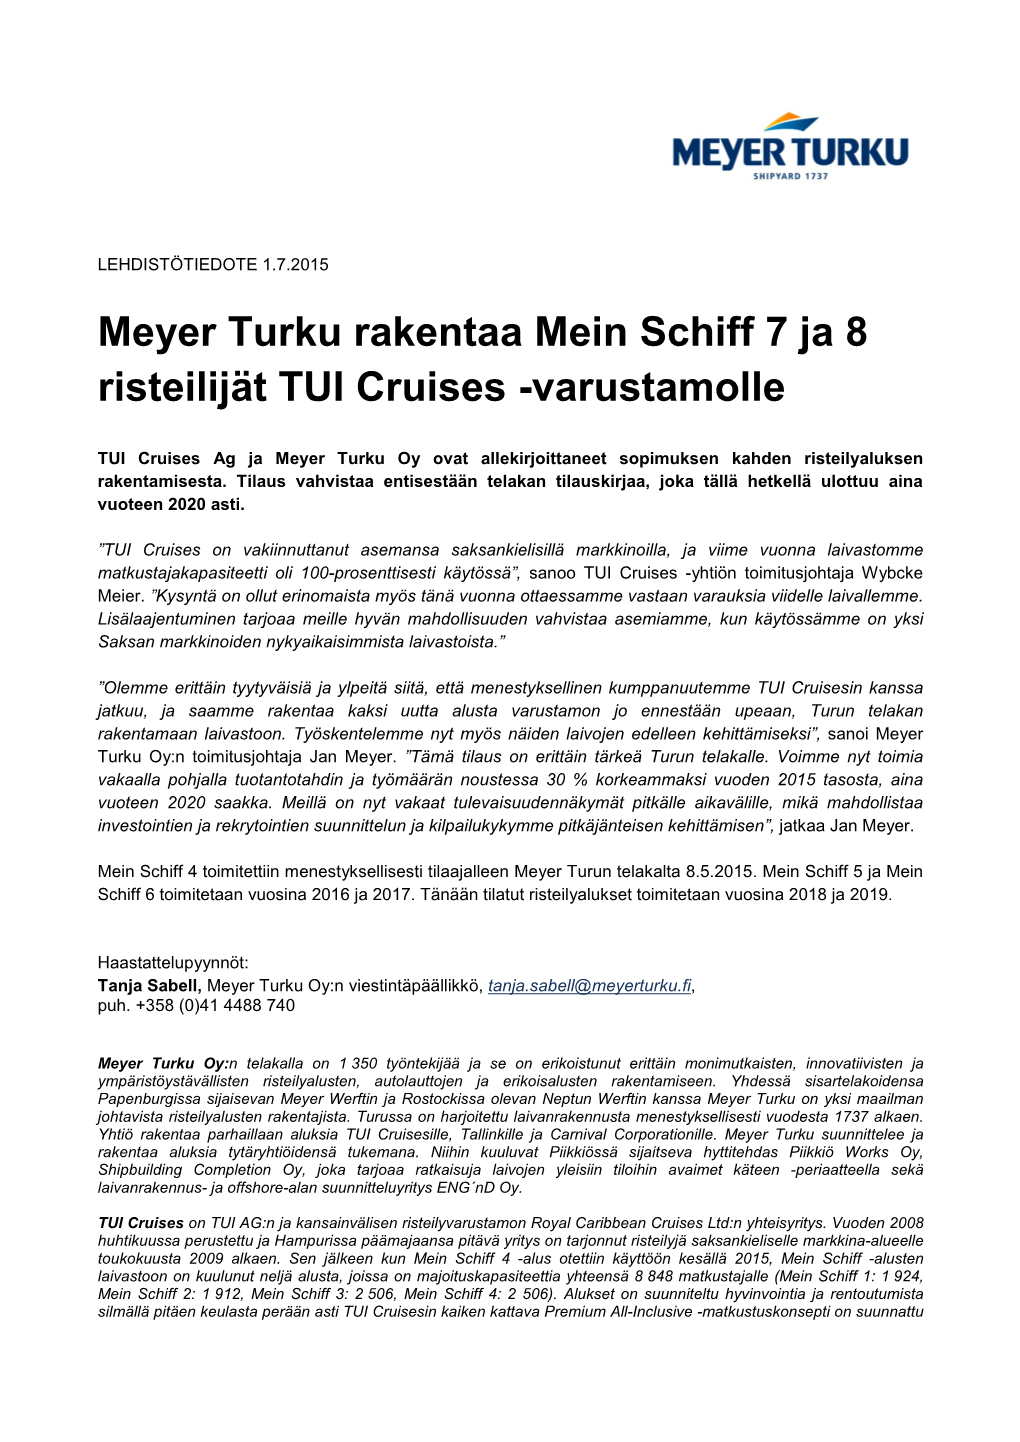 Meyer Turku Rakentaa Mein Schiff 7 Ja 8 Risteilijät TUI Cruises -Varustamolle